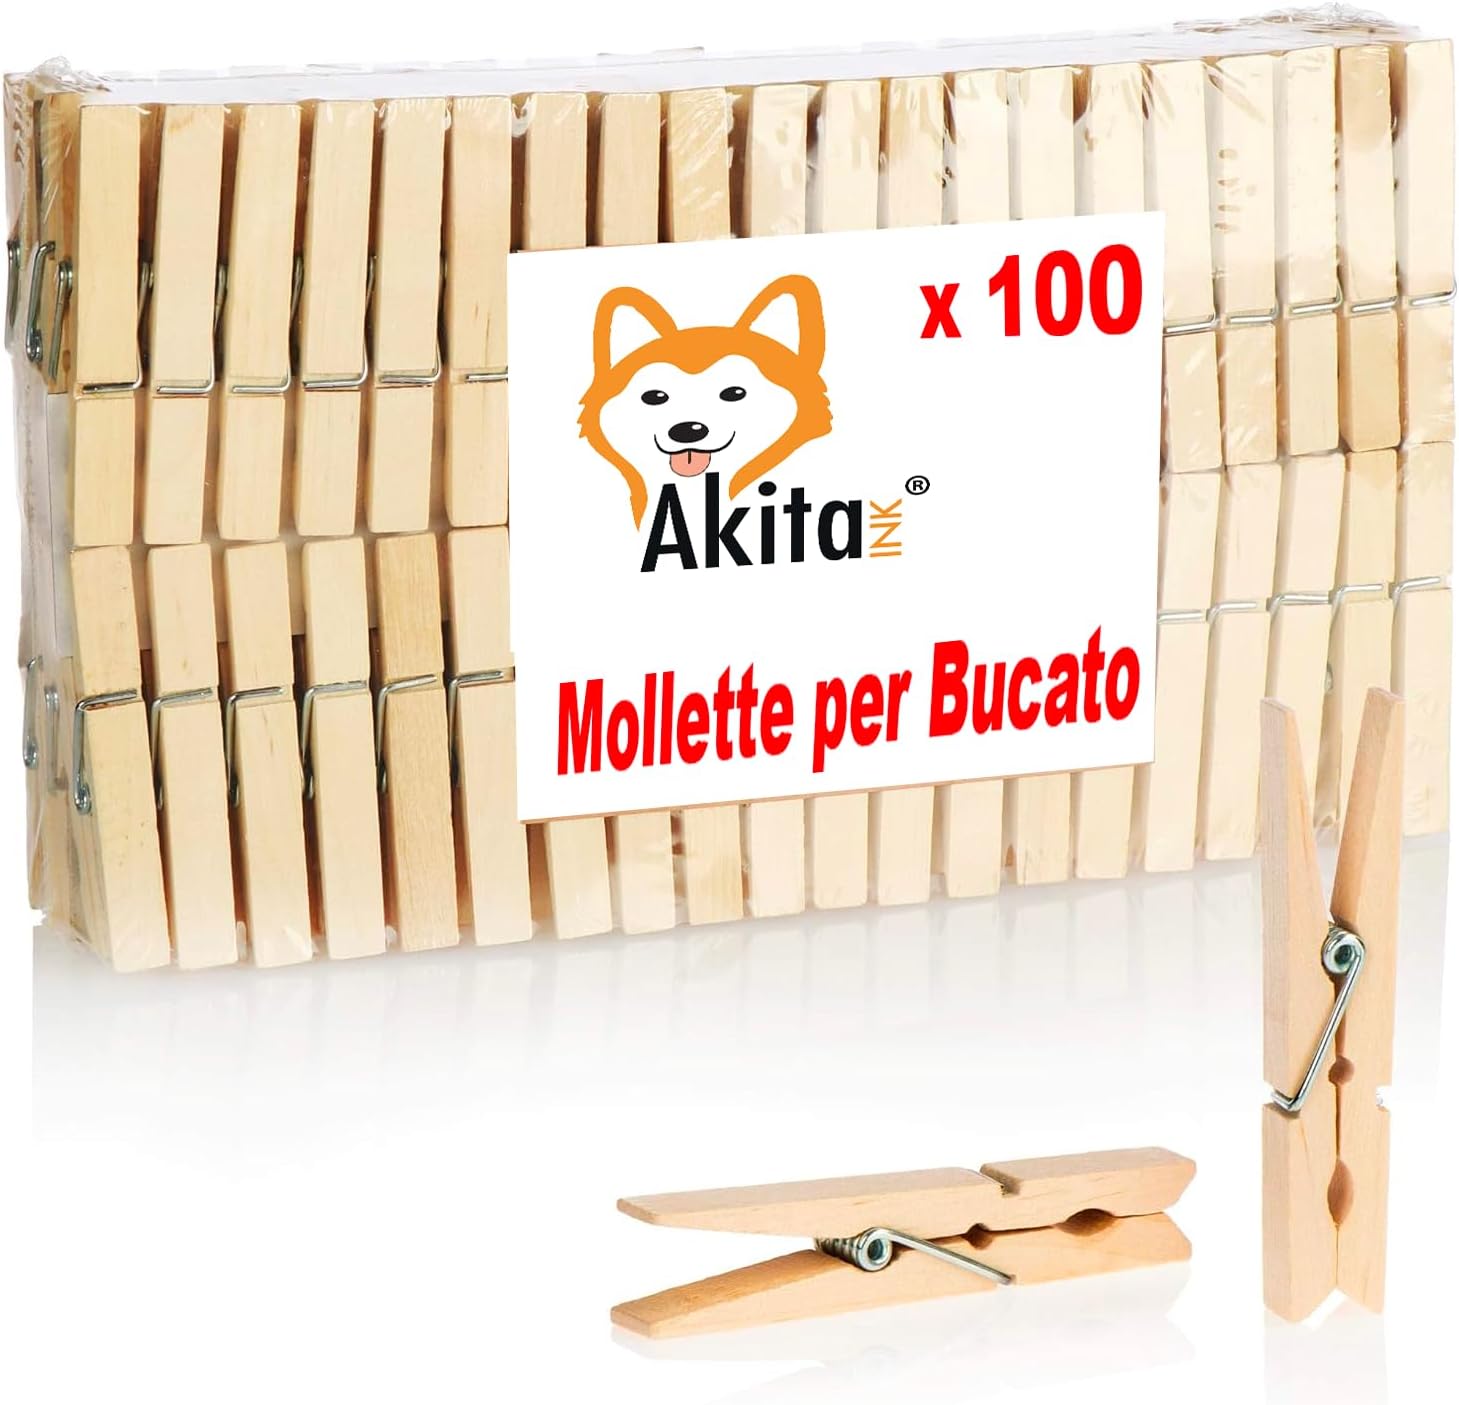 Akitaink - Mollette per Bucato 100 Pezzi, Mollette in Legno, lunghezza 10  cm - Nonsoloinformatica